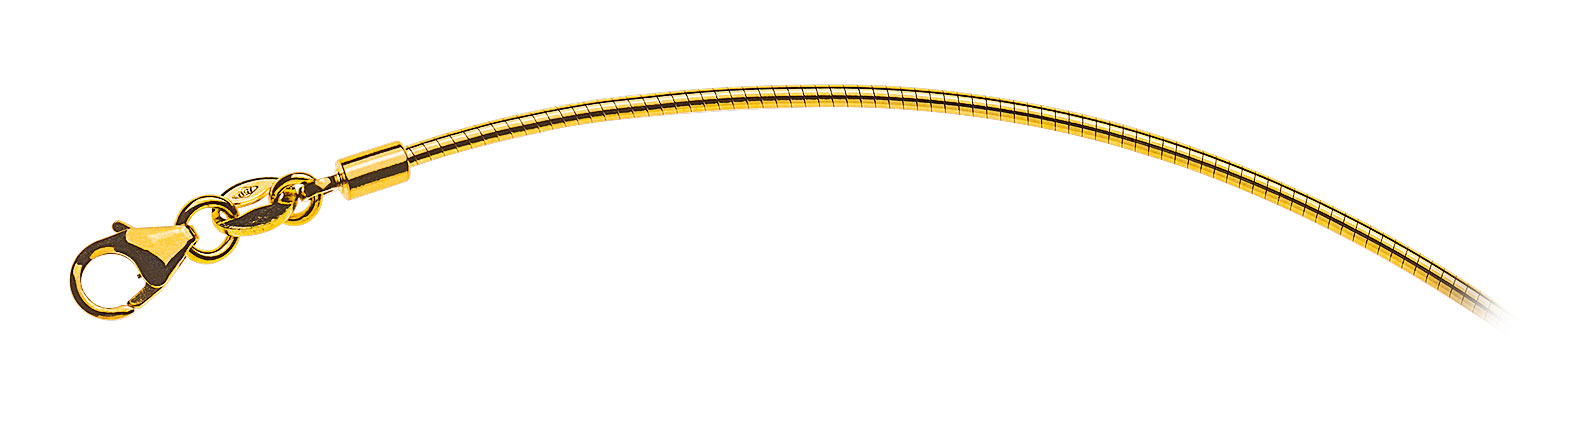 AURONOS Prestige Halskette Gelbgold 18K Omegakette 50cm 1.4mm